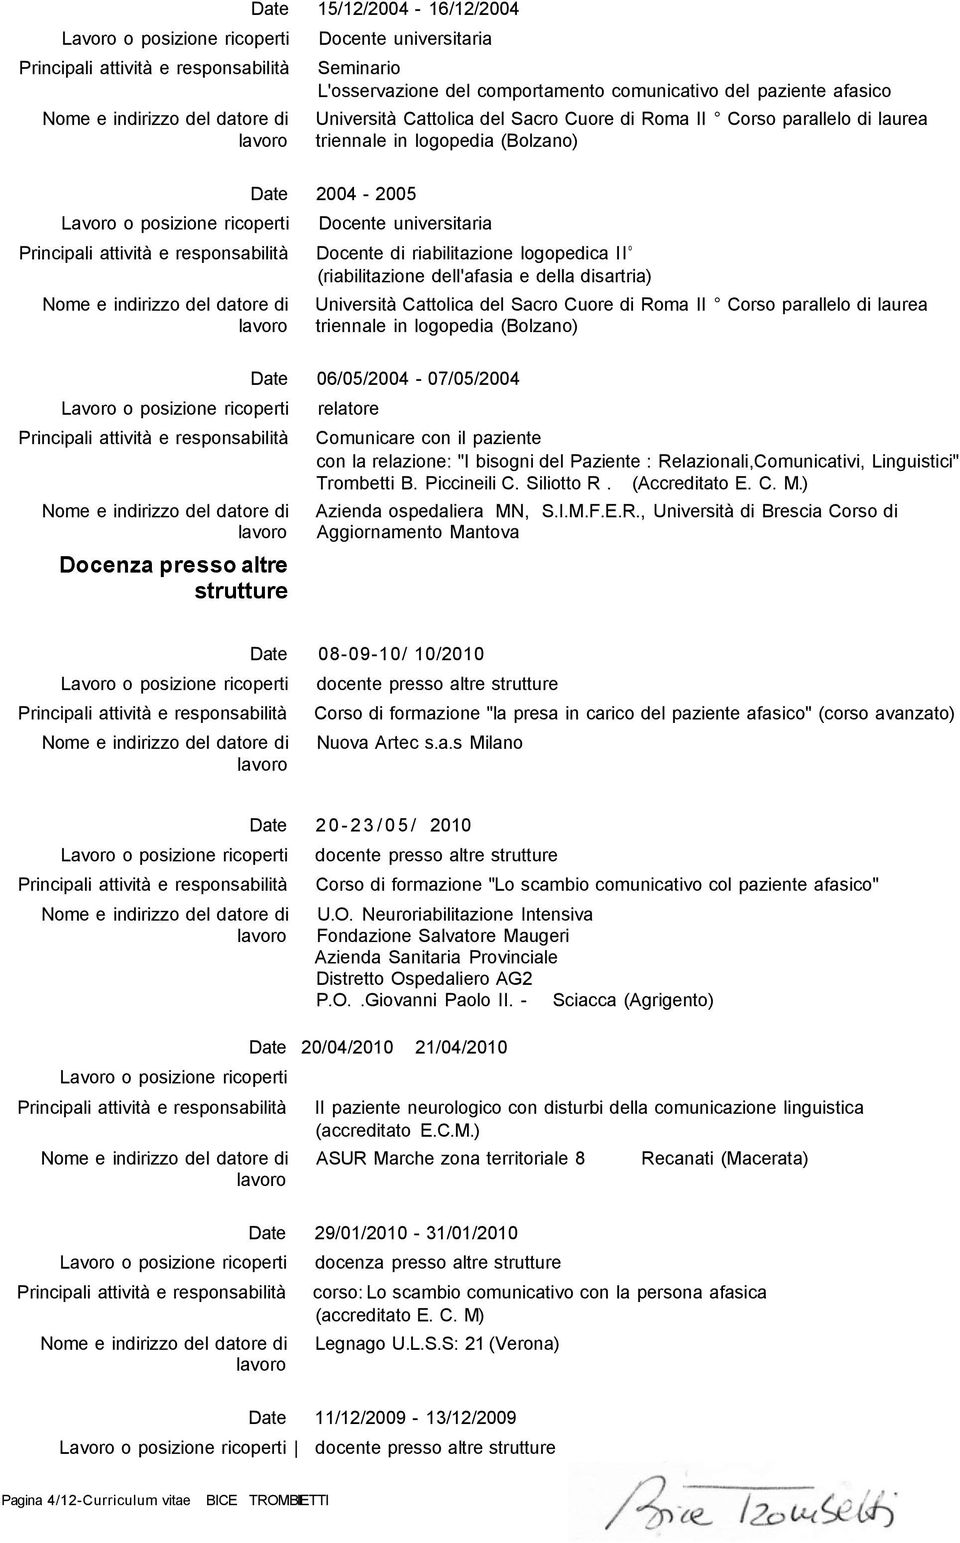 Corso parallelo di laurea 06/05/2004-07/05/2004 Comunicare con il paziente con la relazione: "I bisogni del Paziente : Relazionali,Comunicativi, Linguistici" Trombetti B. Piccineili C. Siliotto R.